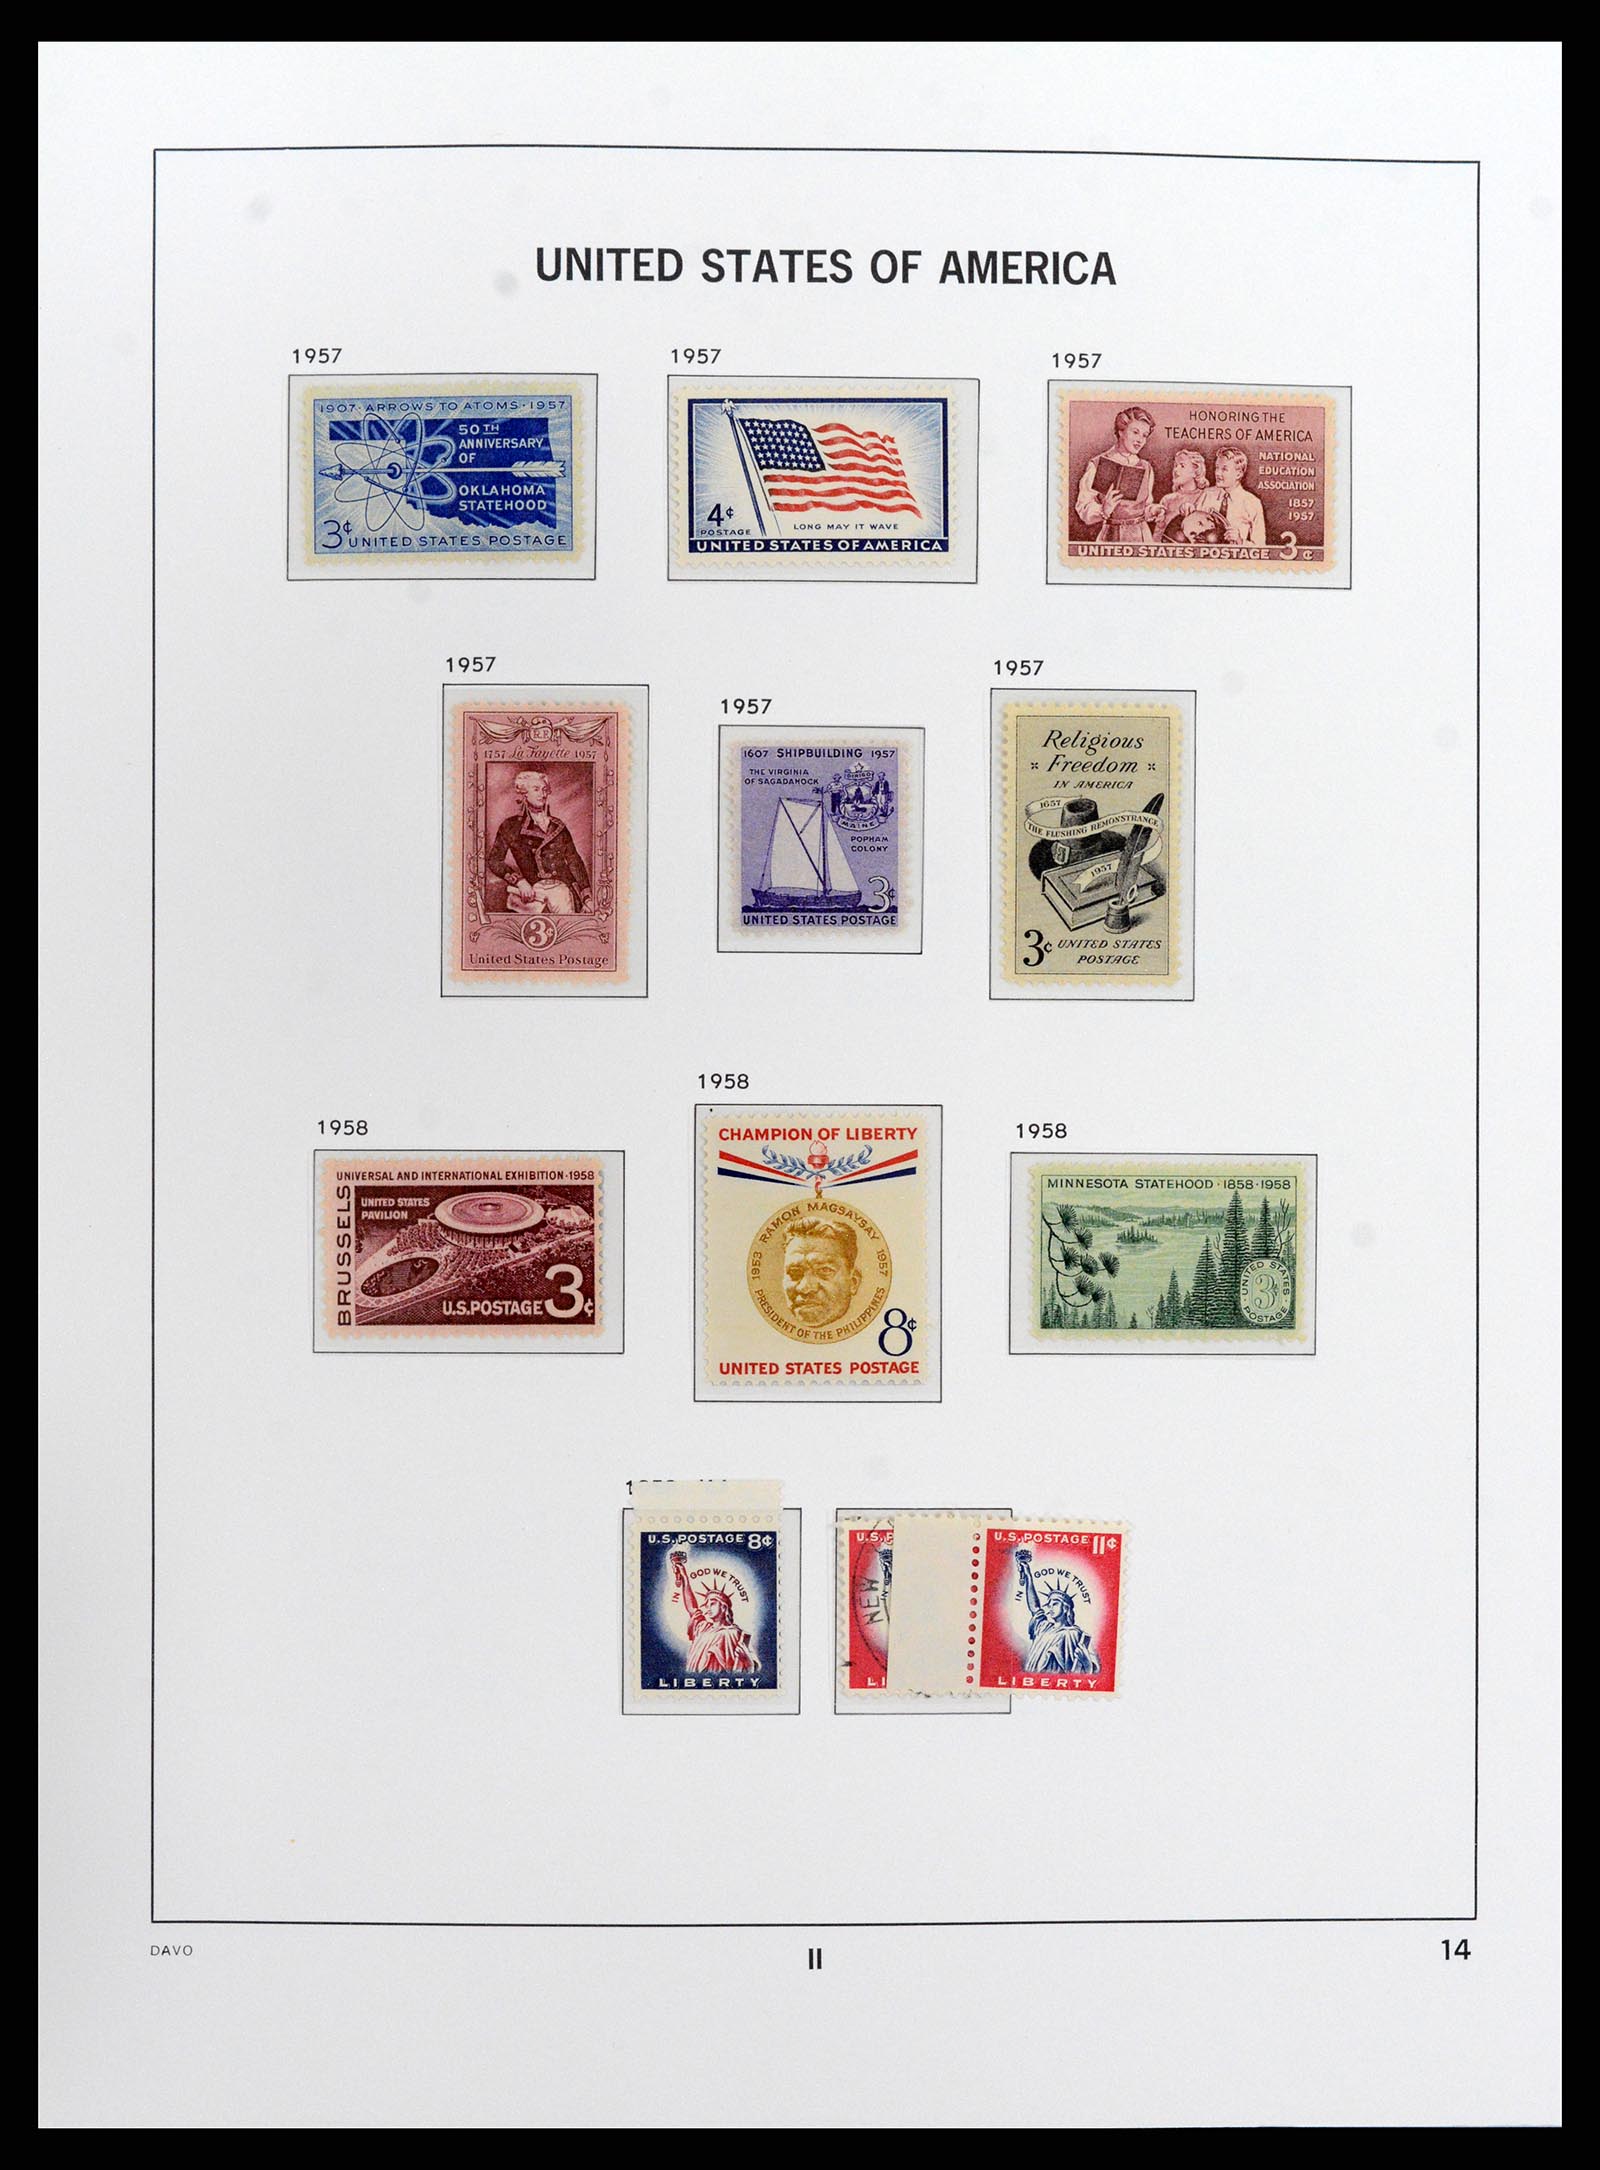 37810 086 - Stamp Collection 37810 USA 1851-2000.